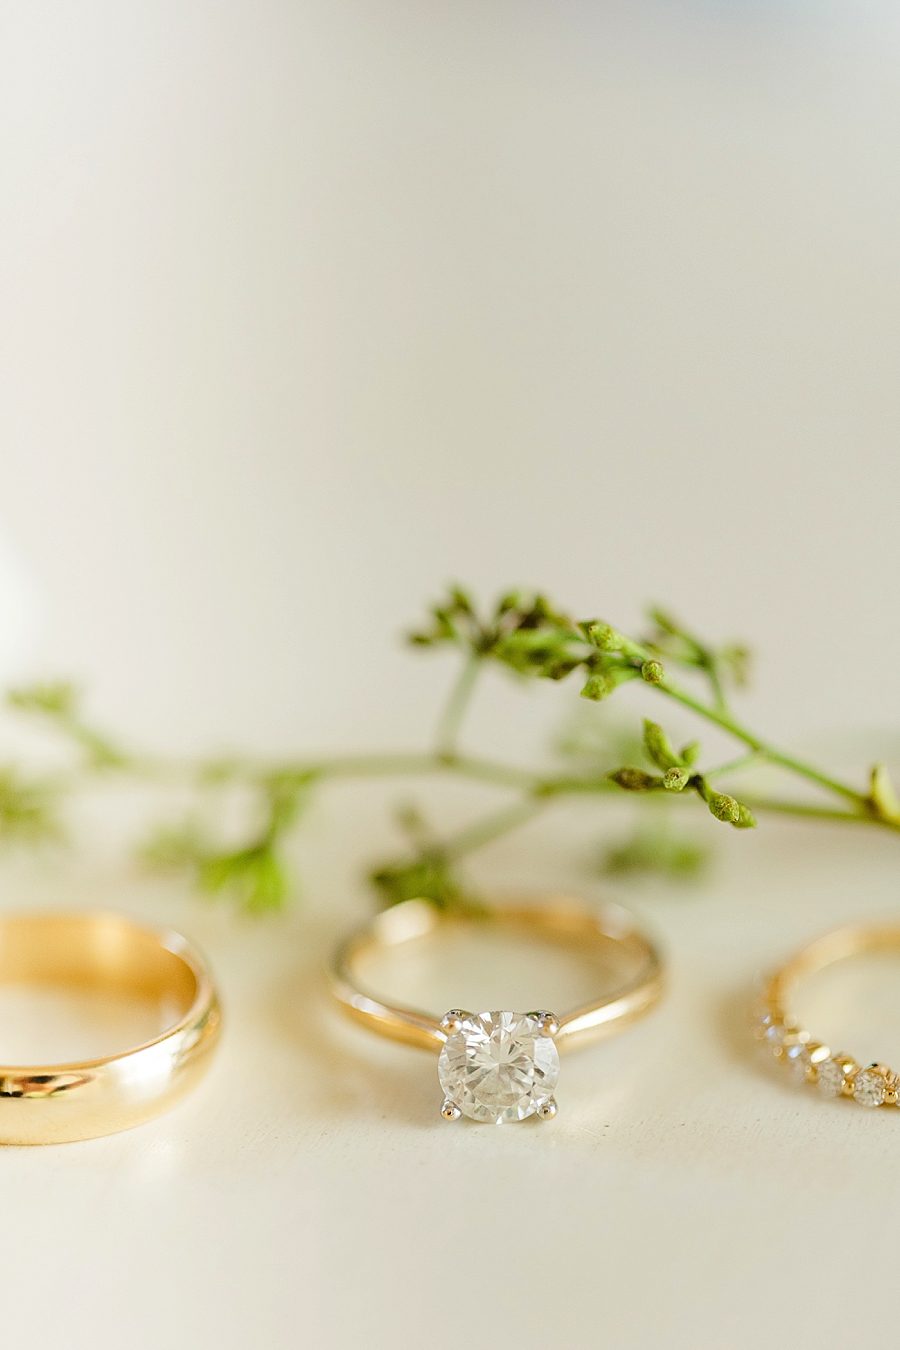 gold wedding rings at vineyard wedding at castleton